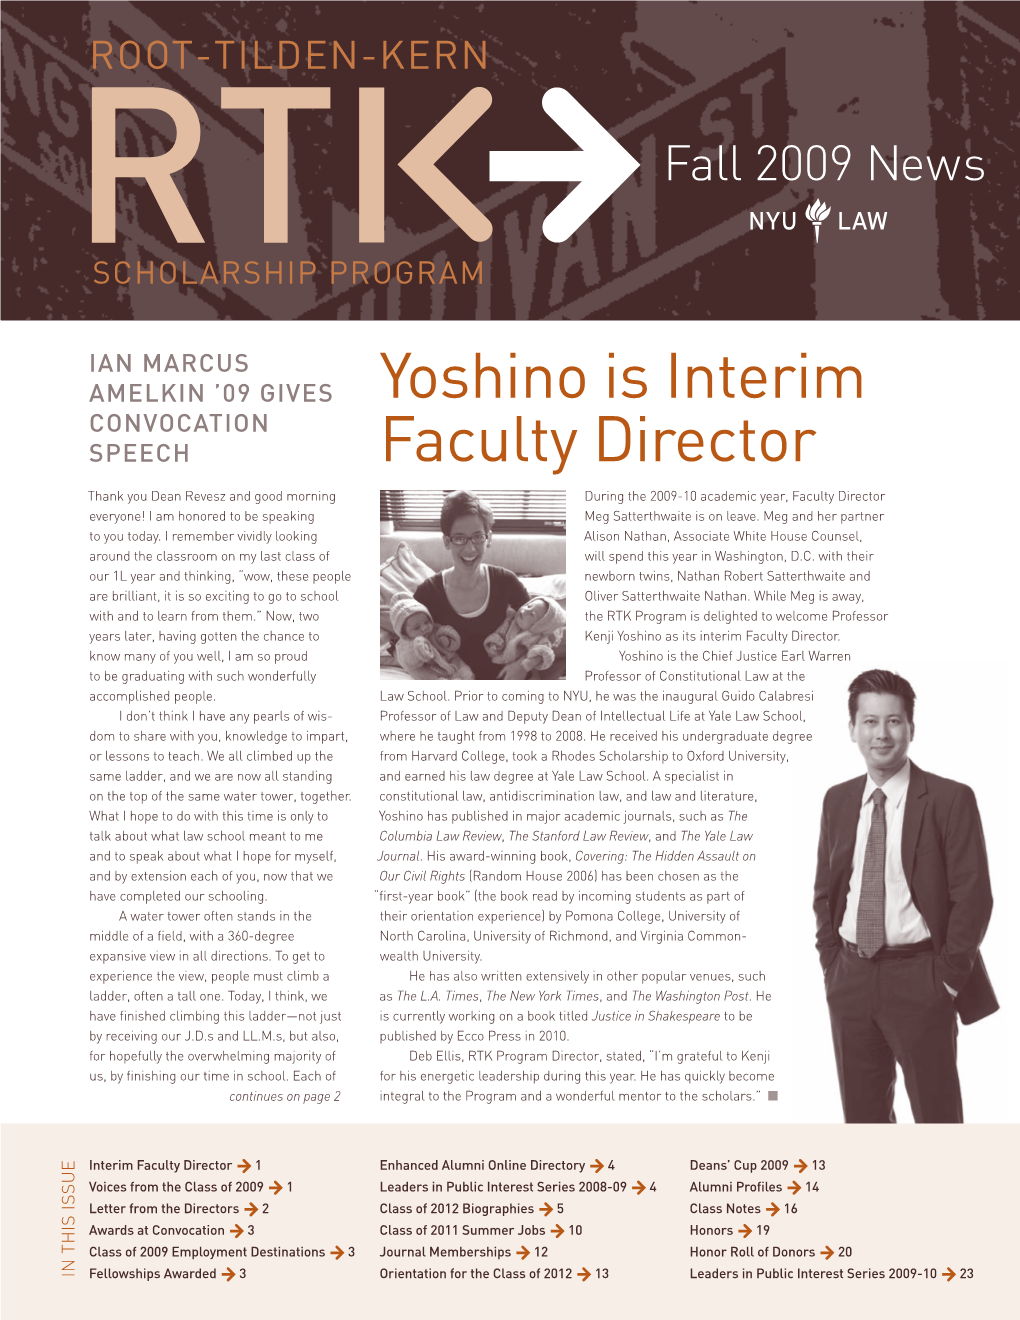 Yoshino Is Interim Faculty Director